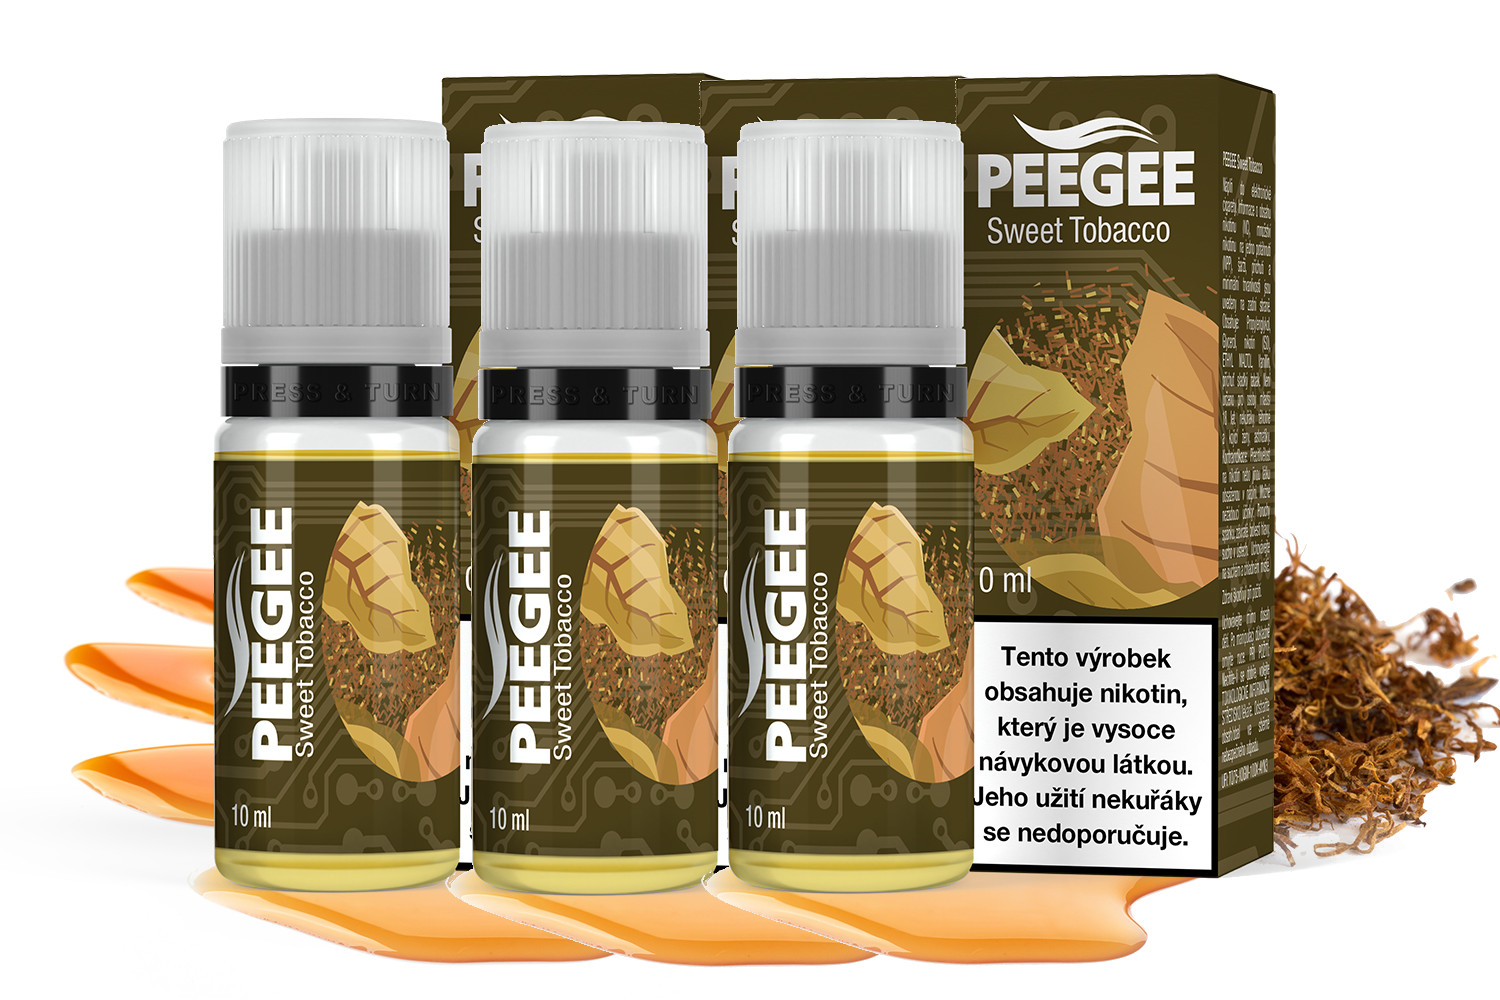 PEEGEE - Sladký tabák (Sweet Tobacco) 3x10ml Obsah nikotinu: 18mg